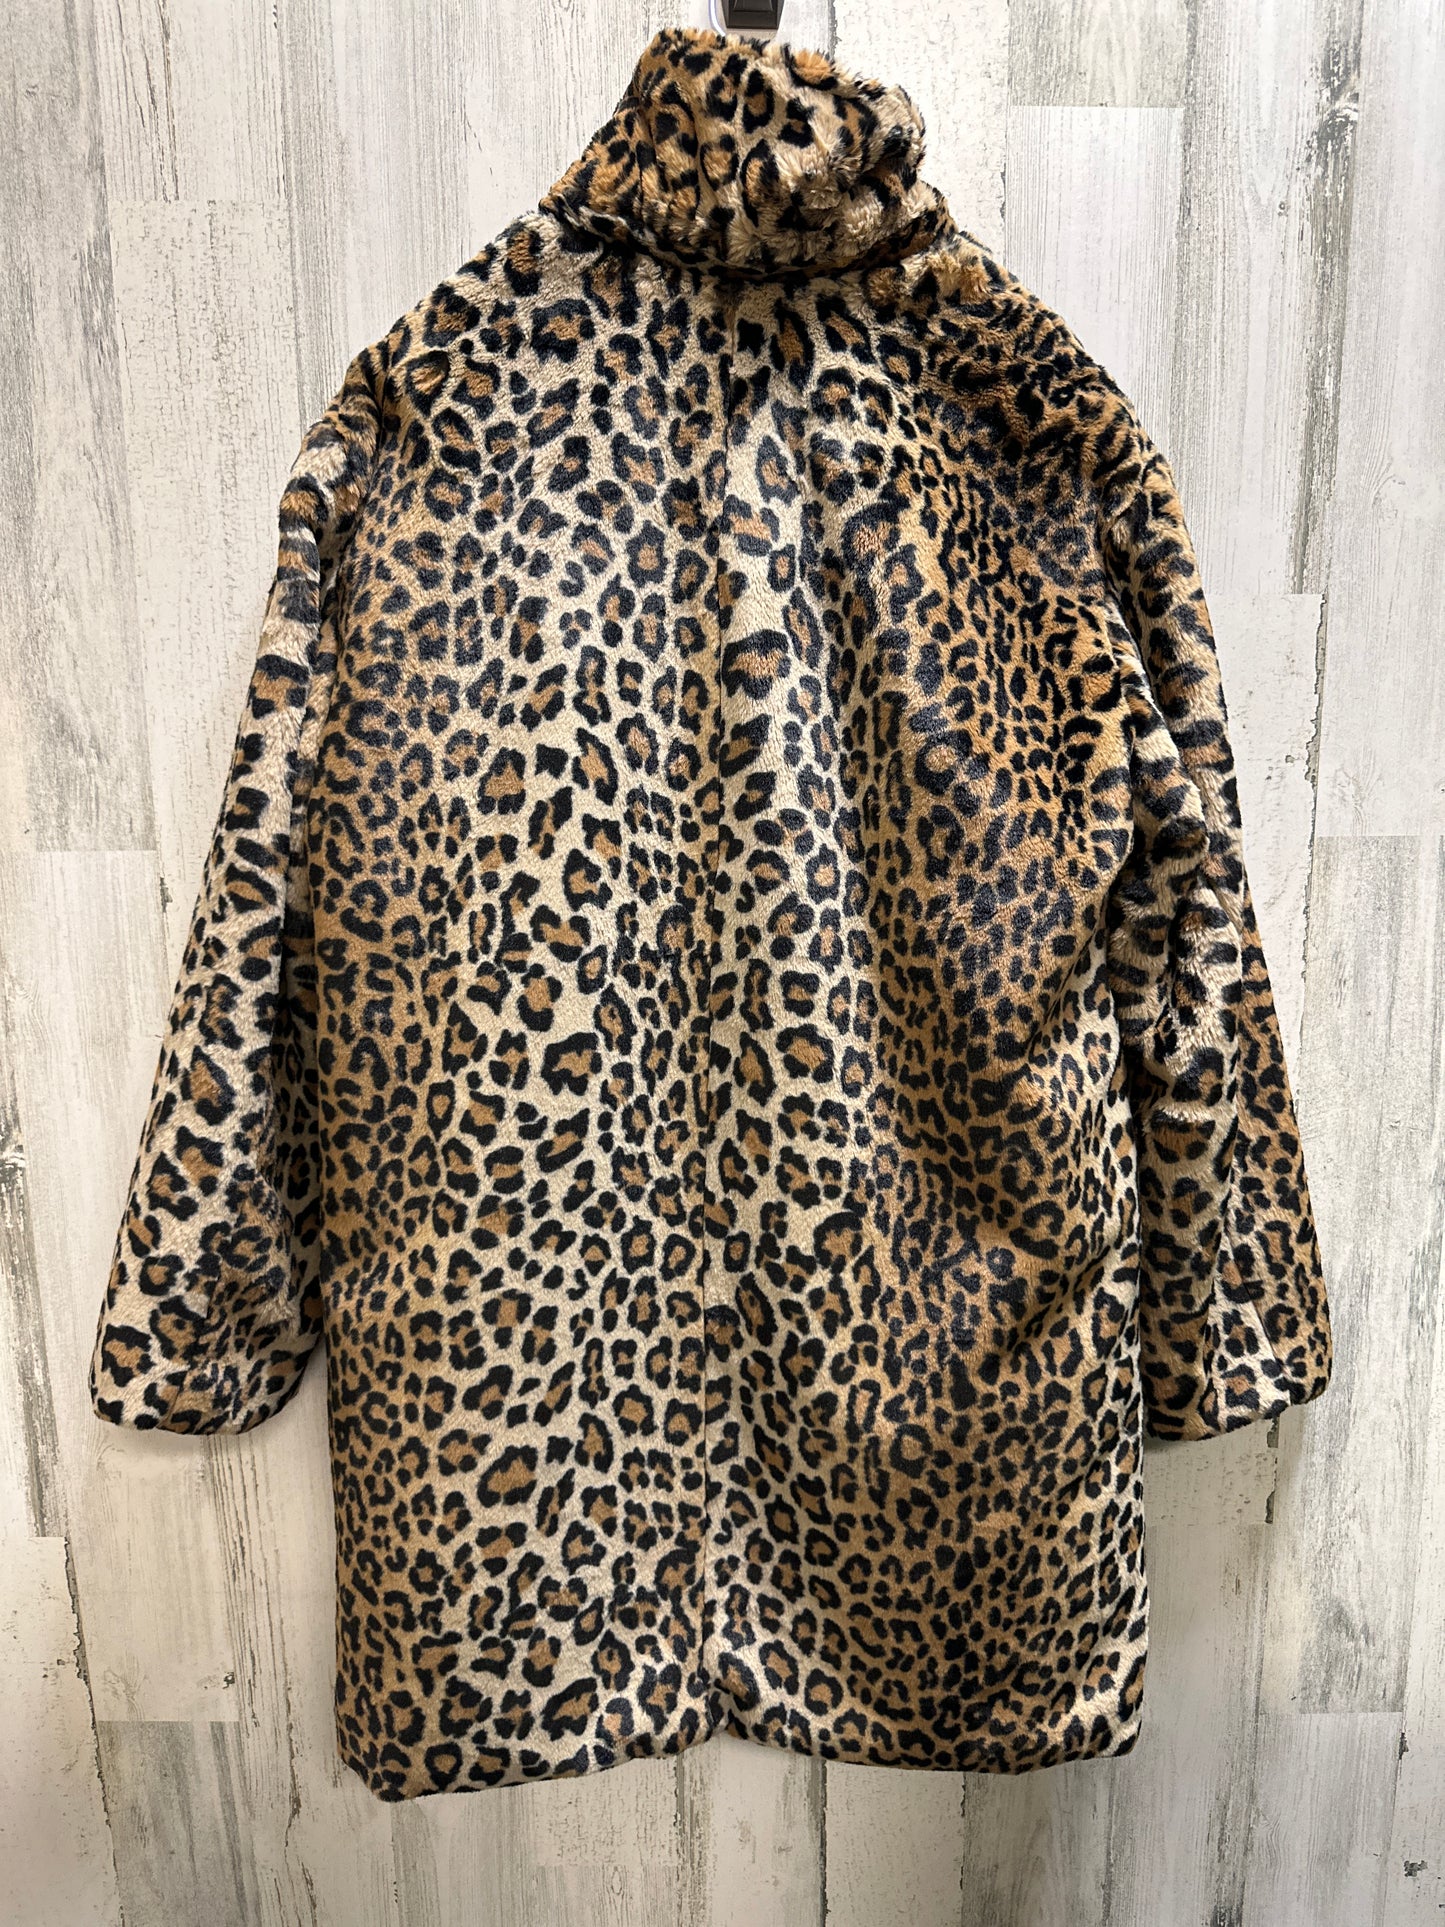 Coat Faux Fur & Sherpa By Sanctuary  Size: L